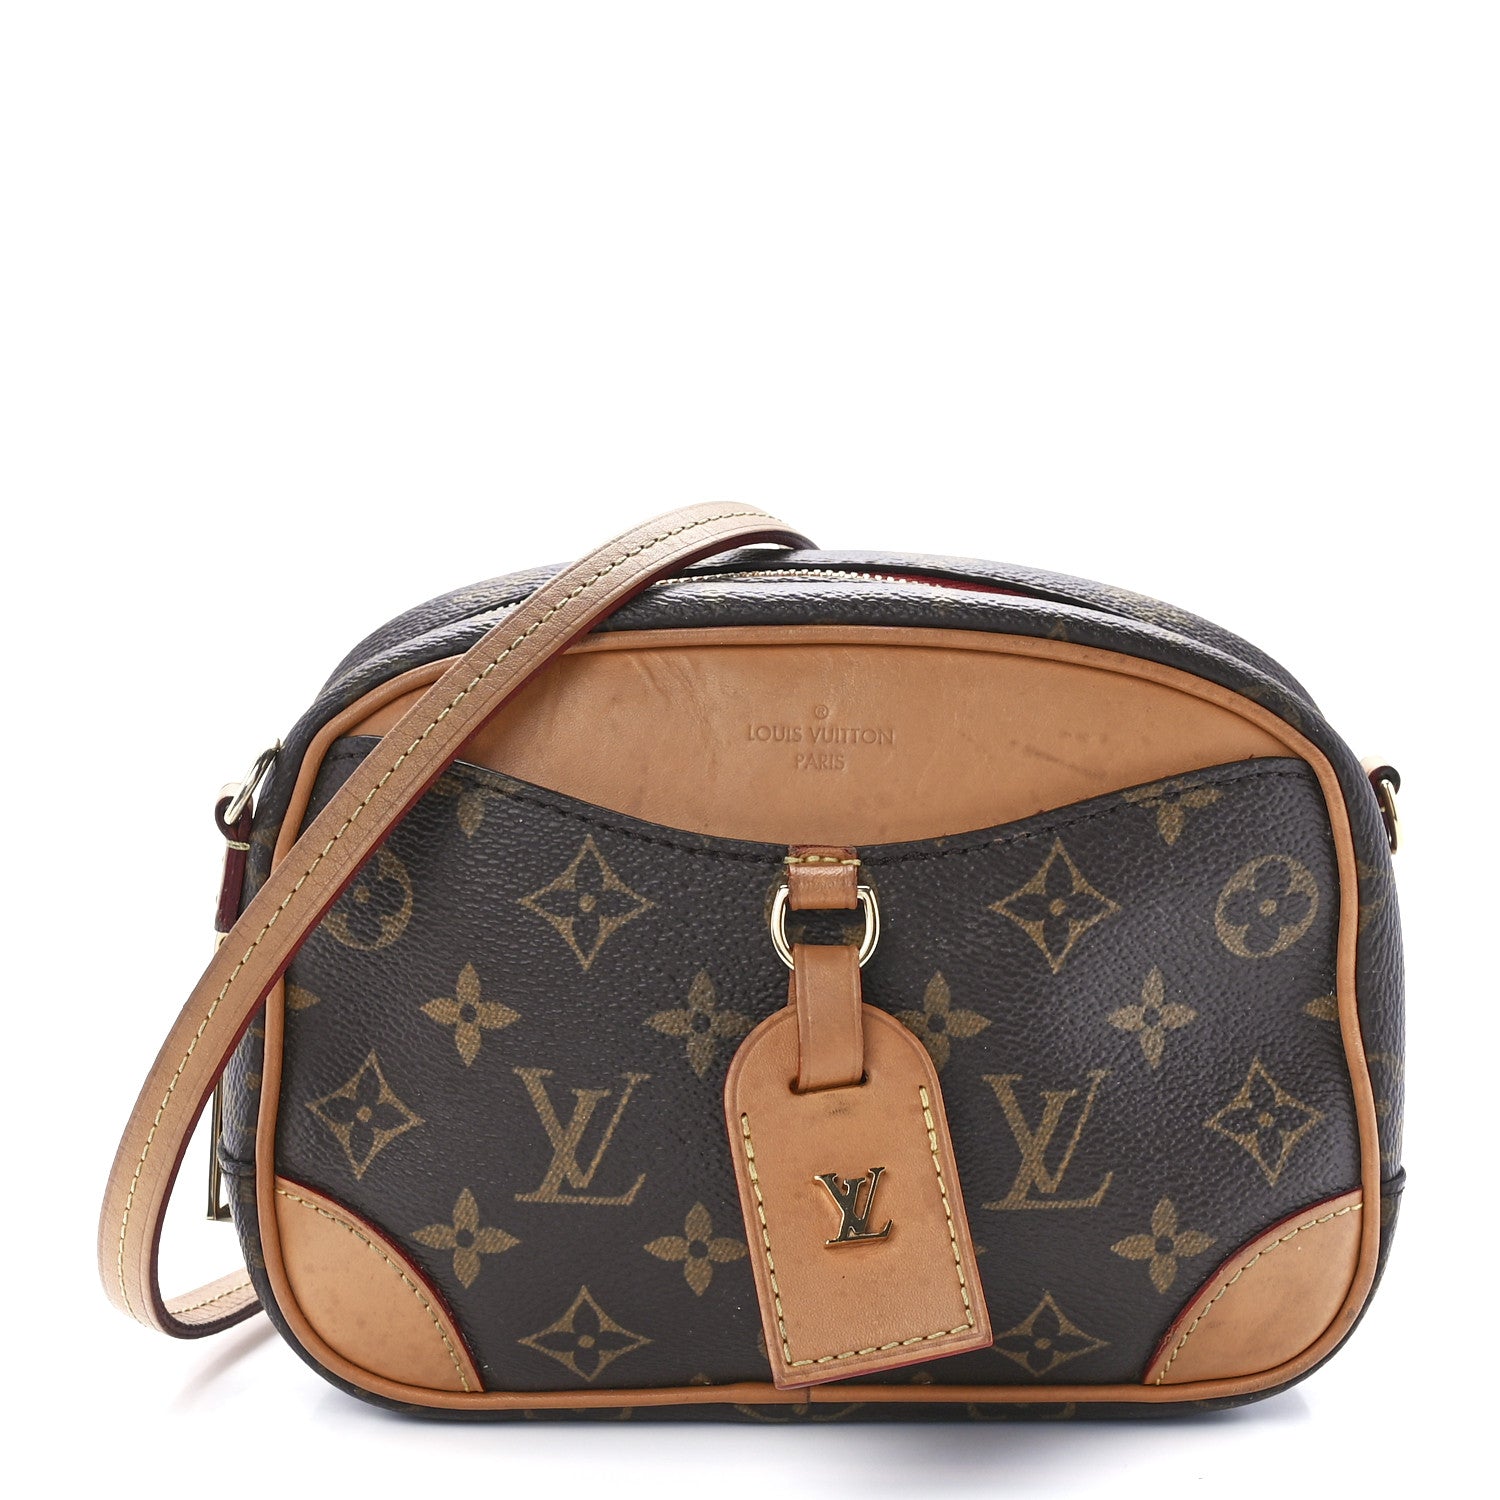 Louis Vuitton Deauville Monogram Bag